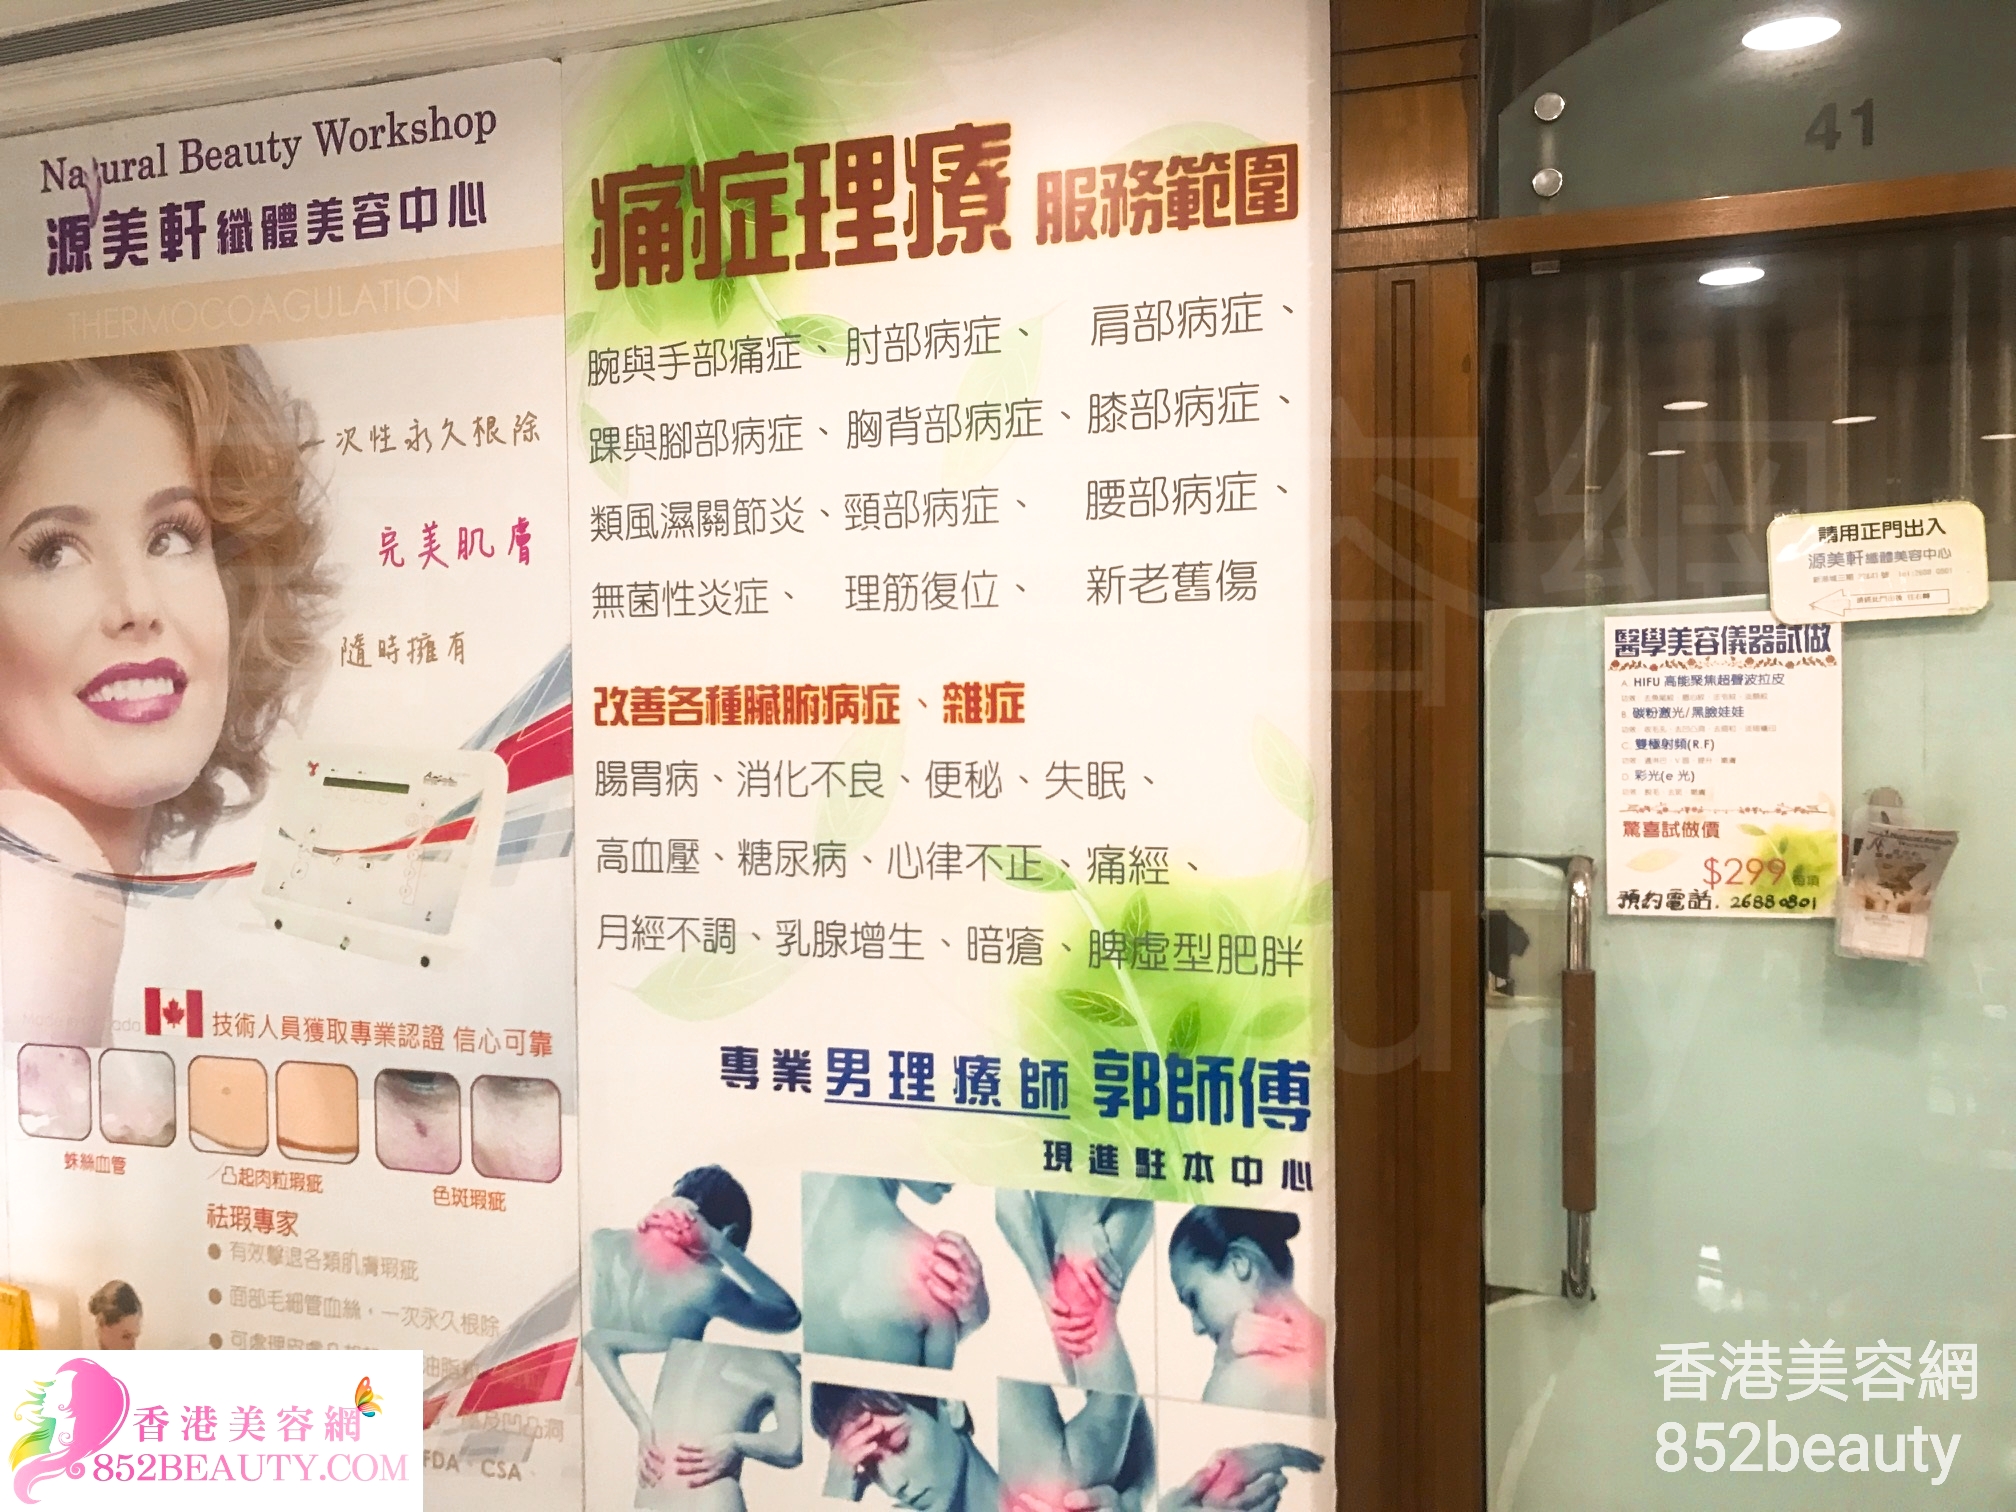 醫學美容: 源美軒纖體美容中心（新港城） Natural Beauty Workshop